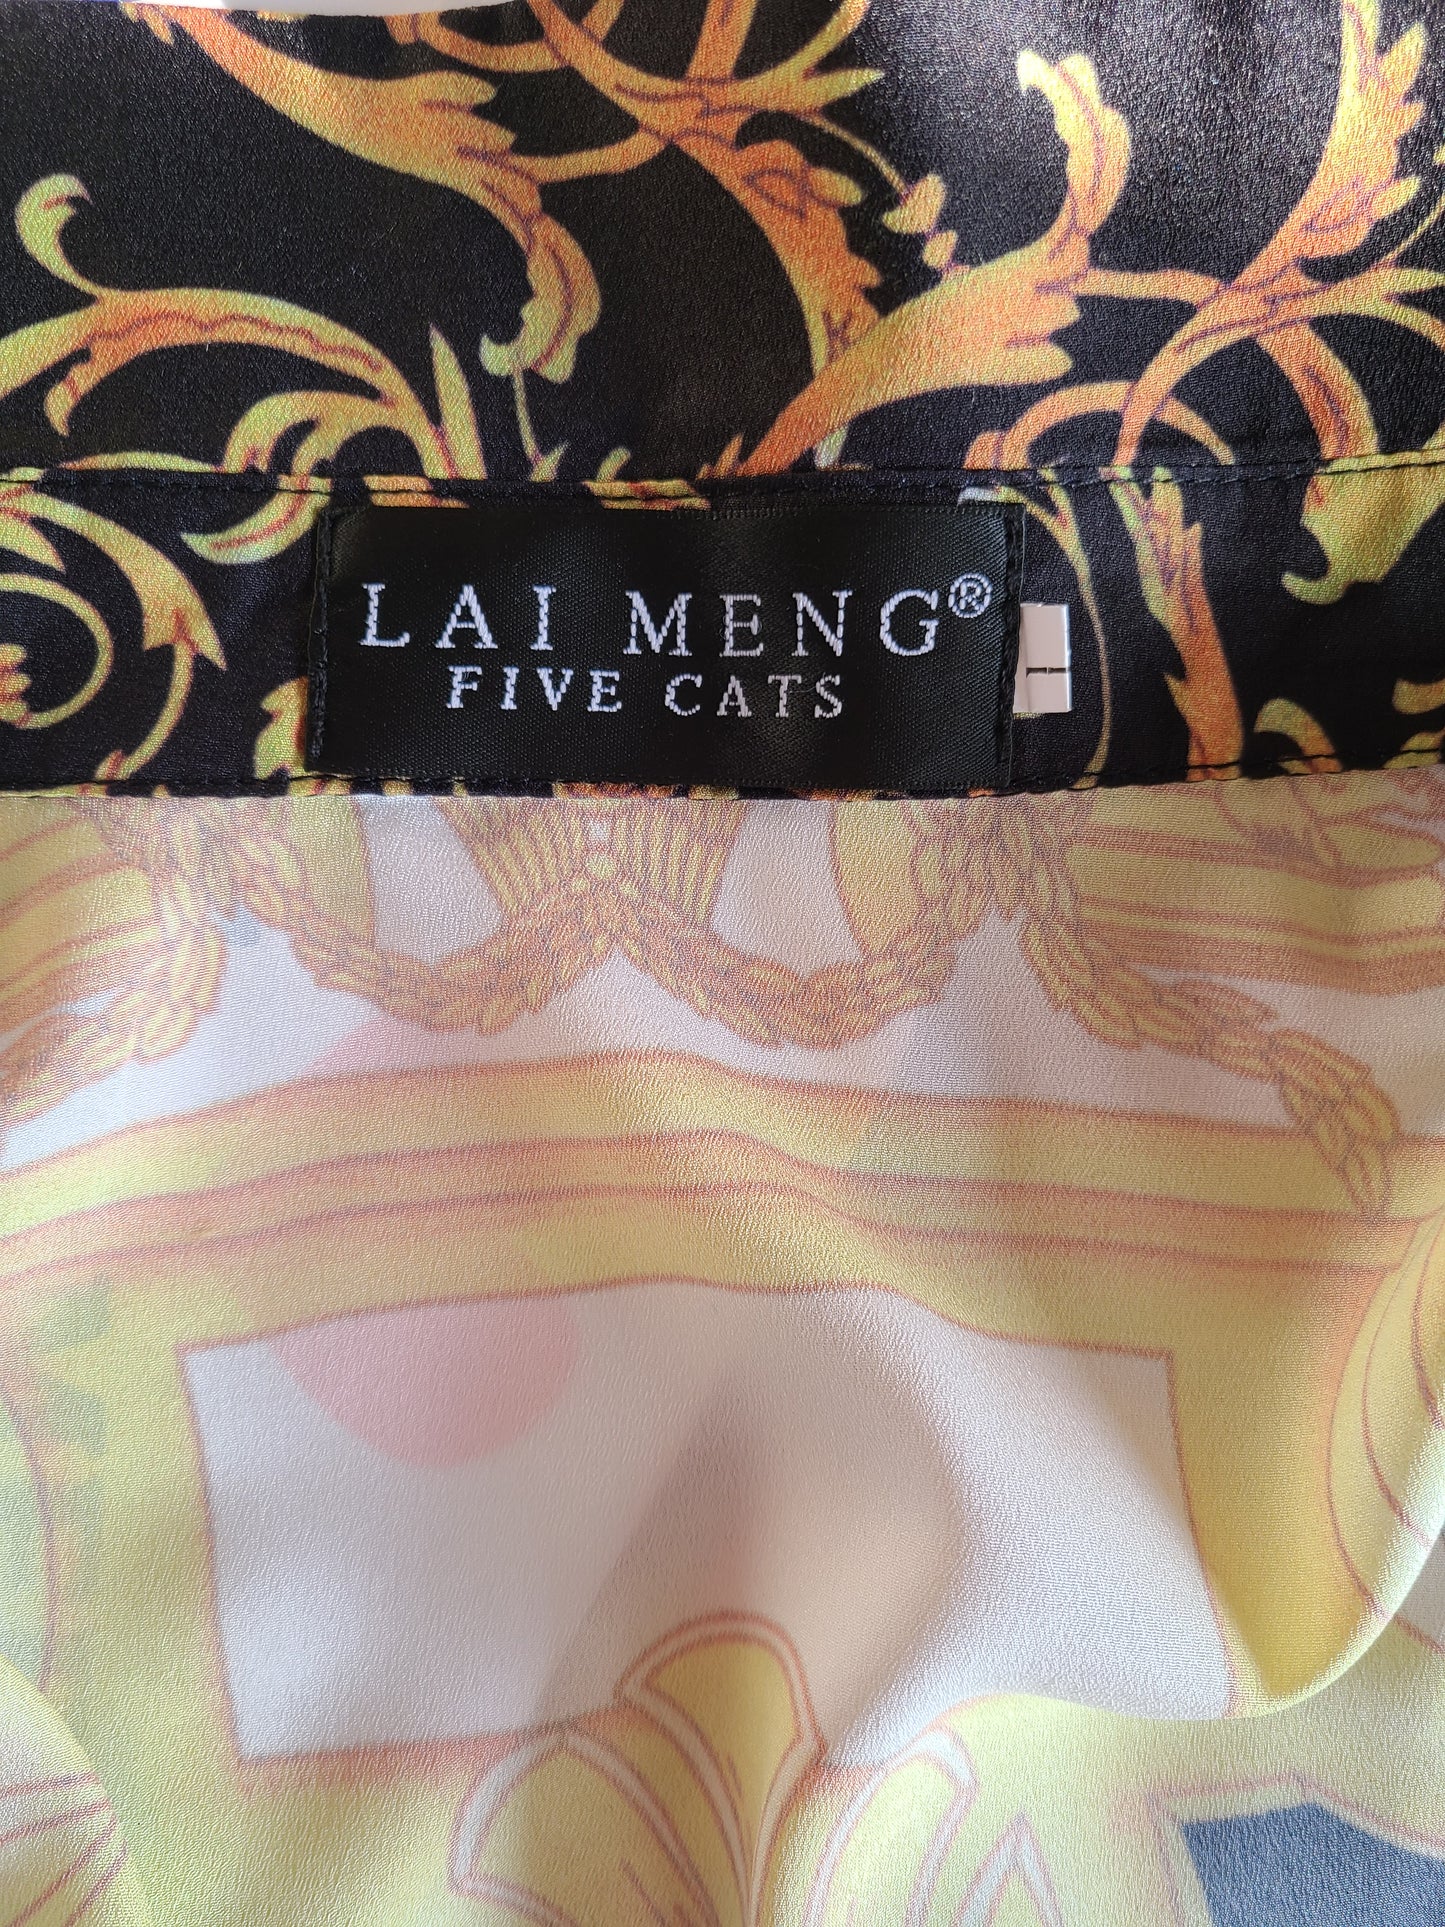 Lai Meng | Five Cats Baroque Print Blouse | Size L